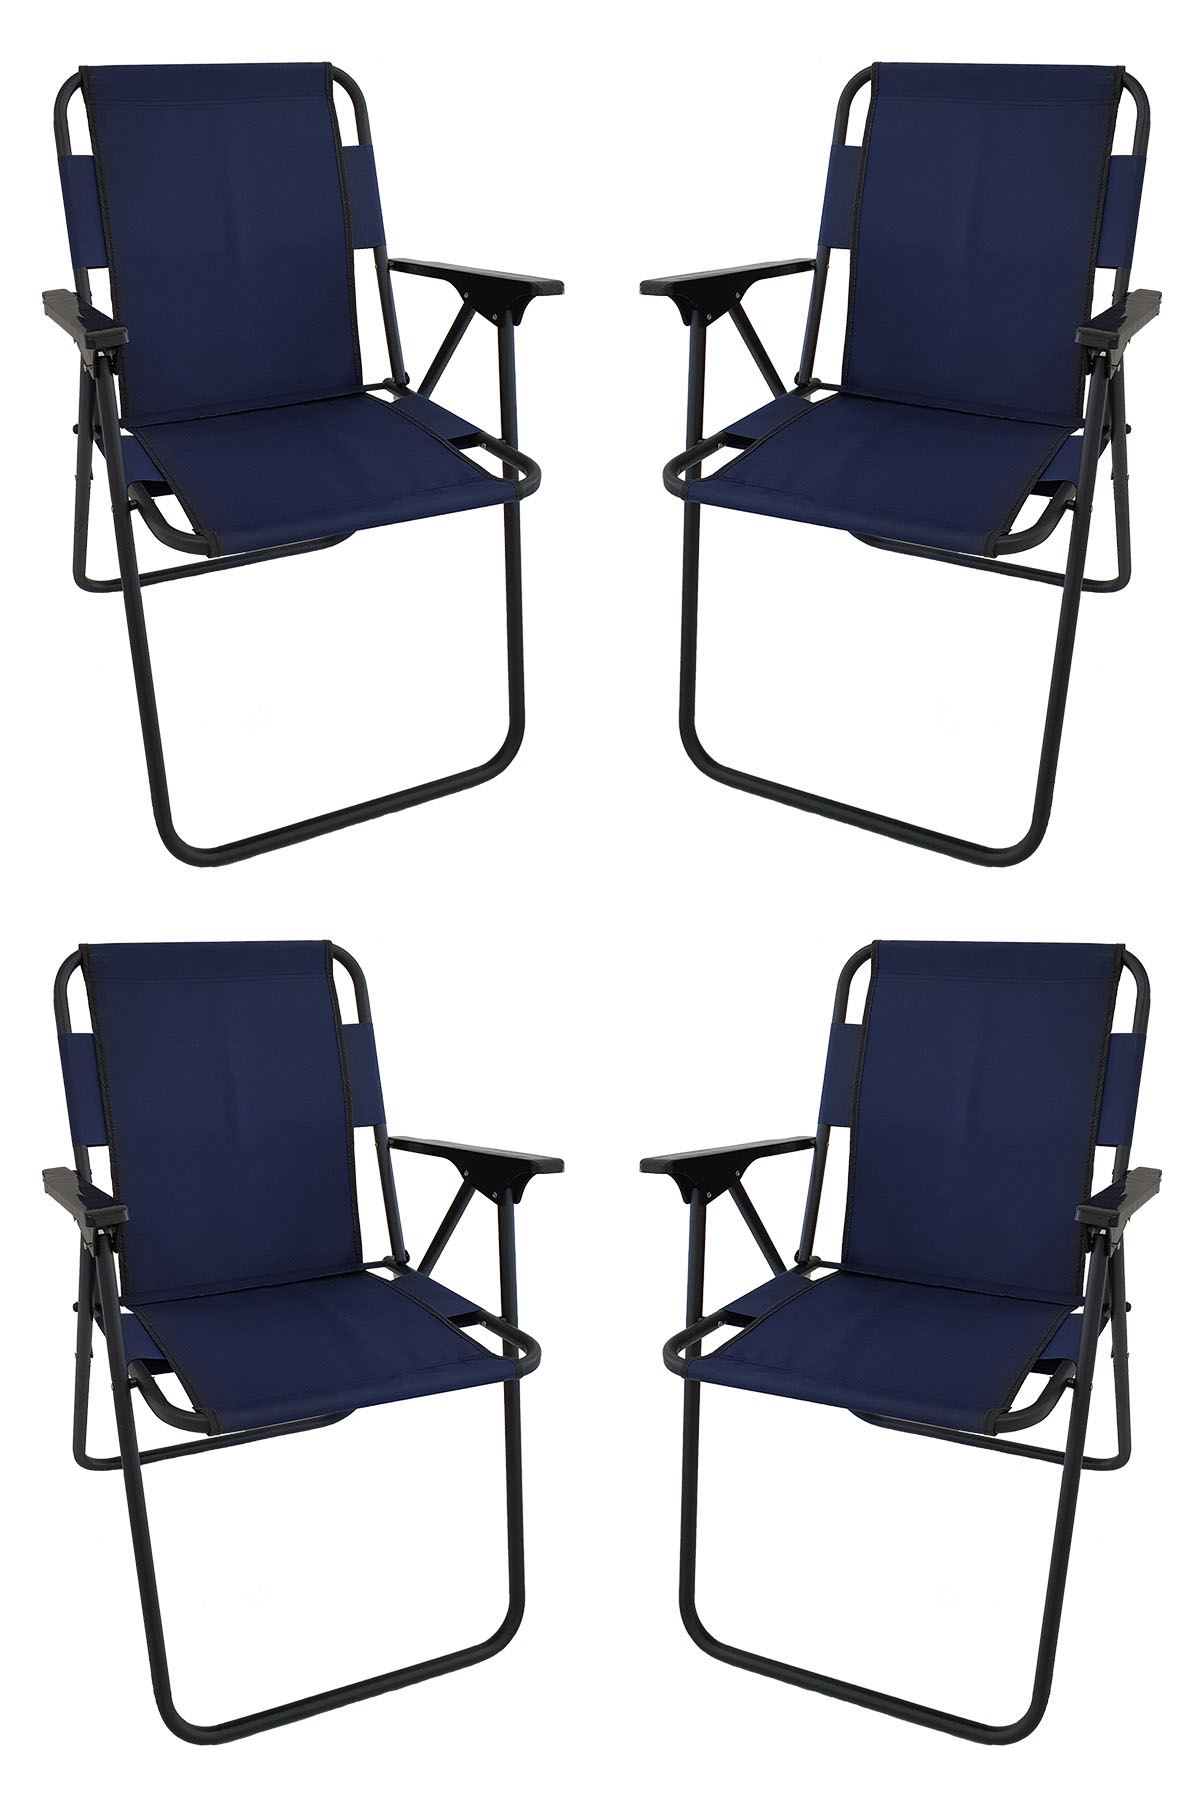 Bofigo 60X80 Çam Desenli Katlanır Masa + 4 Adet Katlanır Sandalye Kamp Seti Bahçe Takımı Lacivert